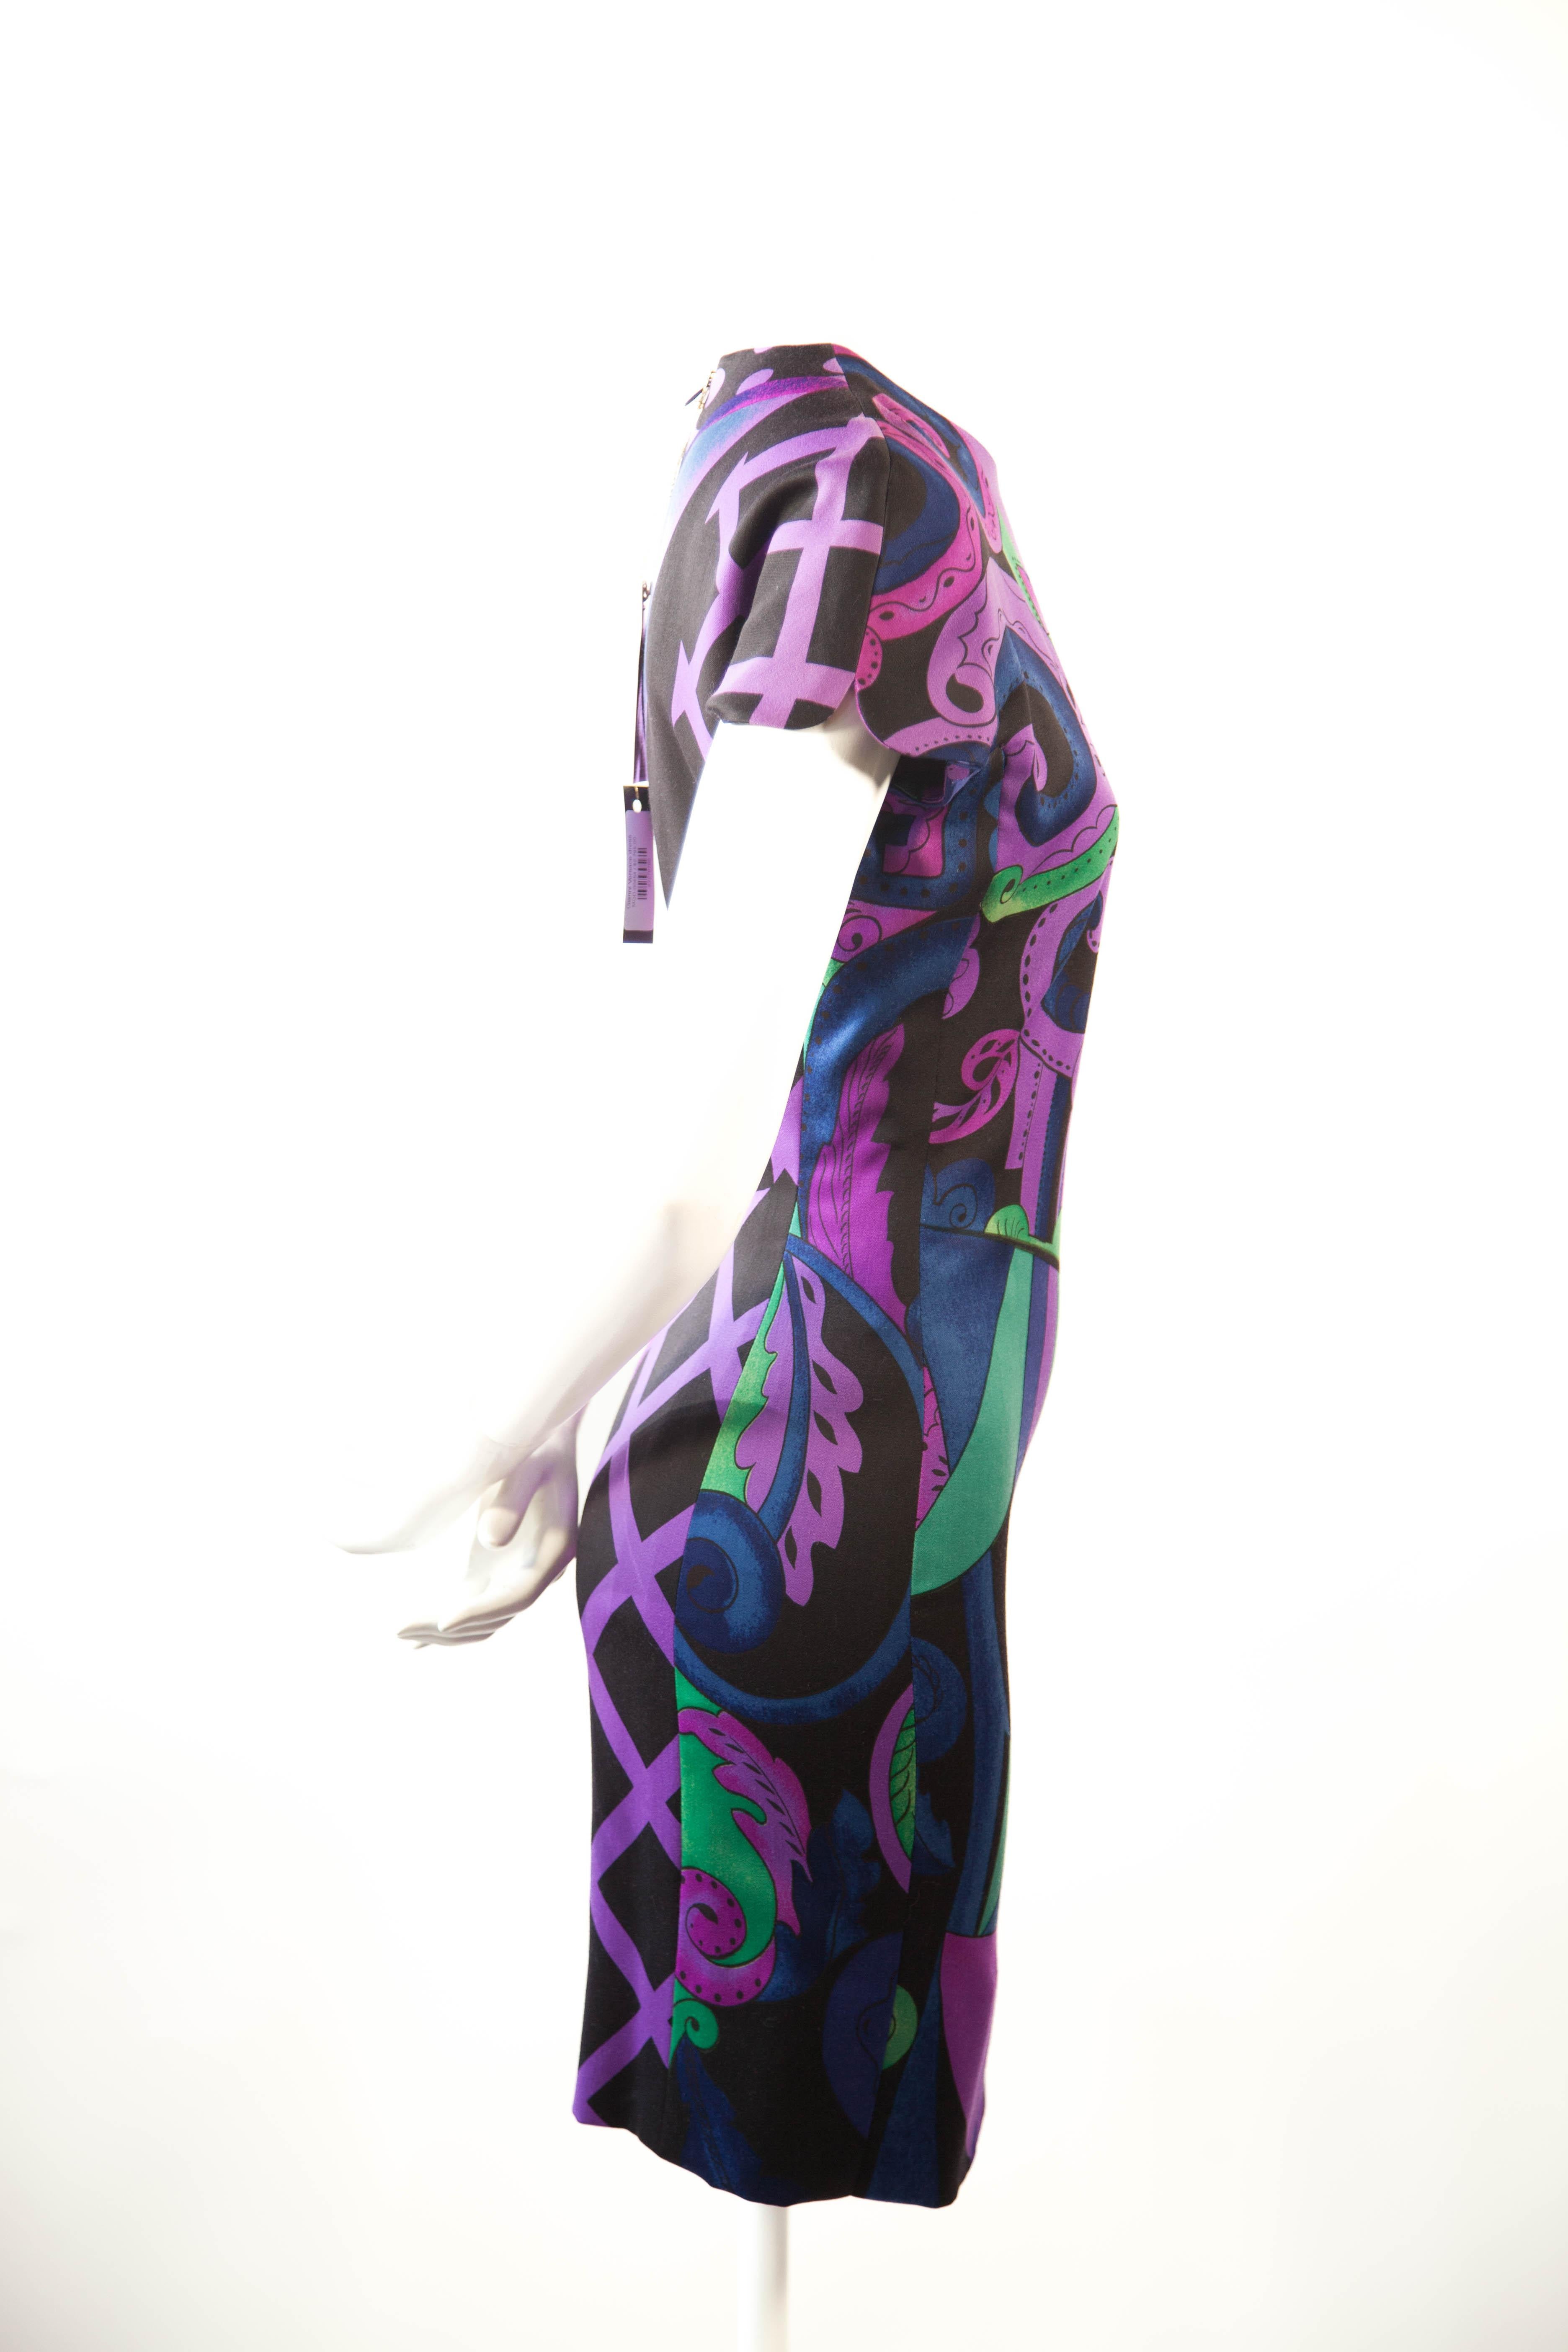 Gianni Versace, vers les années 1990.
Laine fine, motif abstrait dans les tons violet, bleu, vert et noir.
Soie doublée en violet 
Manches courtes, encolure bijou.
Midi-Length
